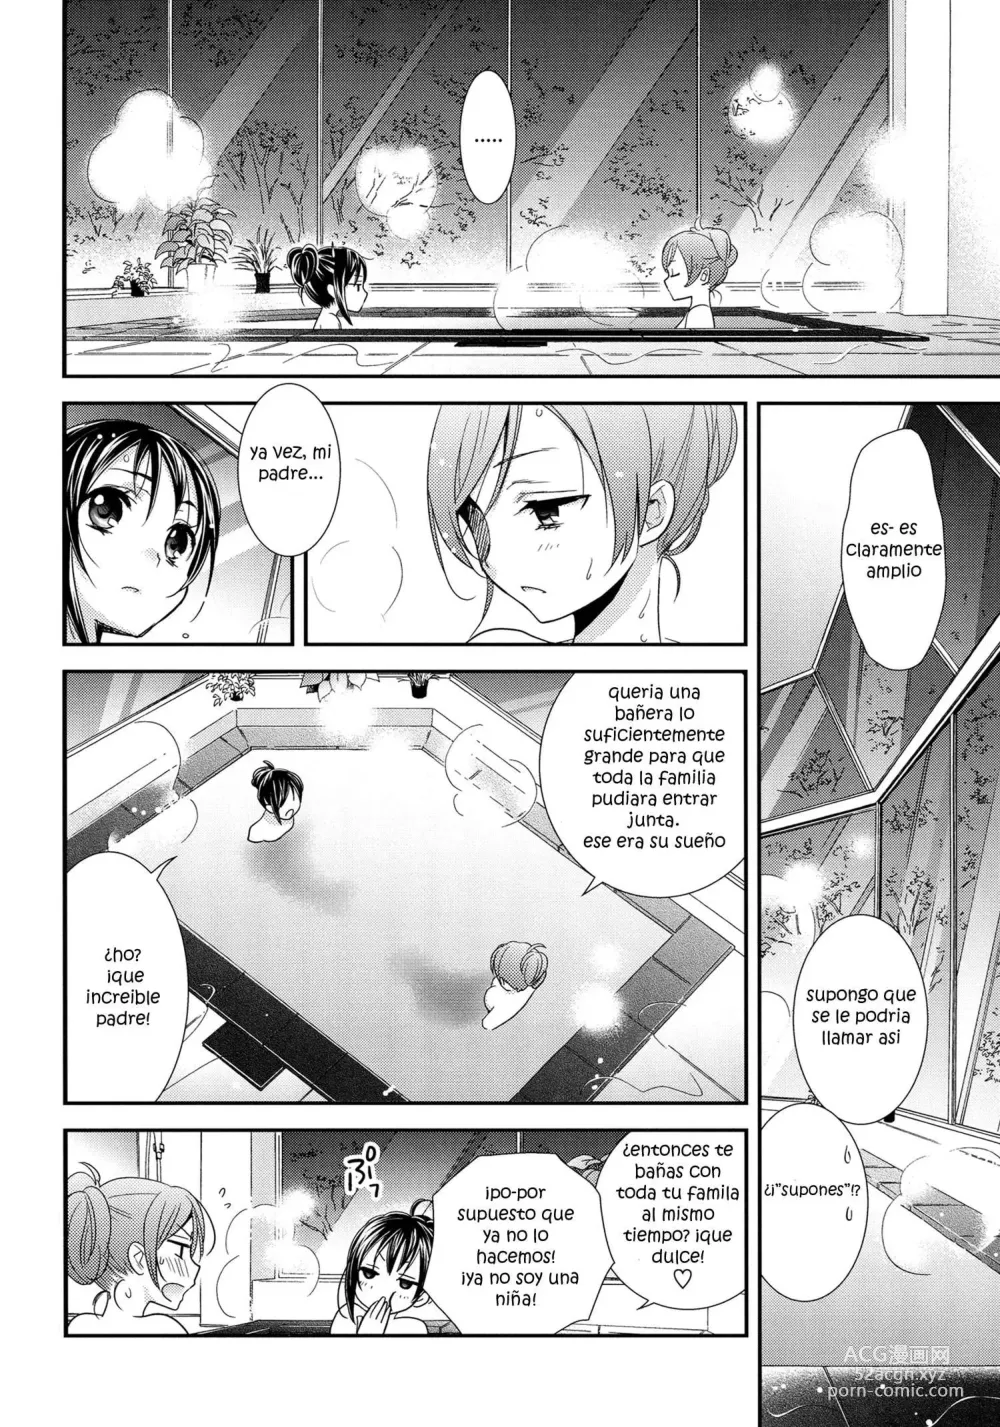 Page 7 of doujinshi Hoo o Tsutau Namida ga Yozora no Hoshi ni Kawaru Toki.